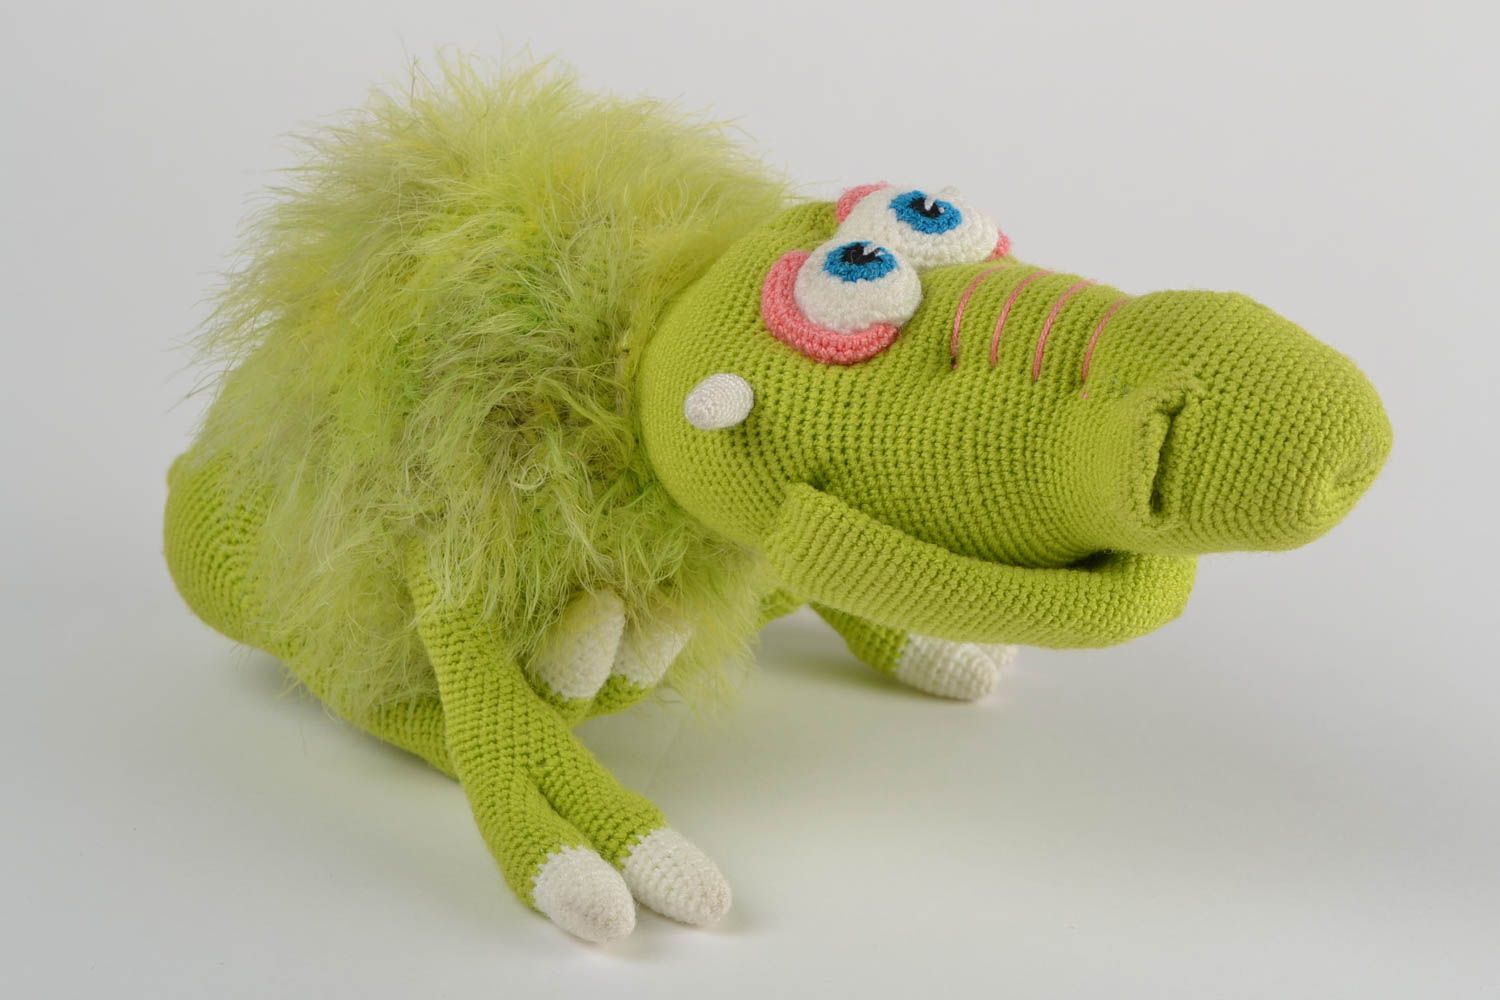 Мягкая вязаная игрушка ручной работы для детей смешная зеленая авторская Грагомот фото 1